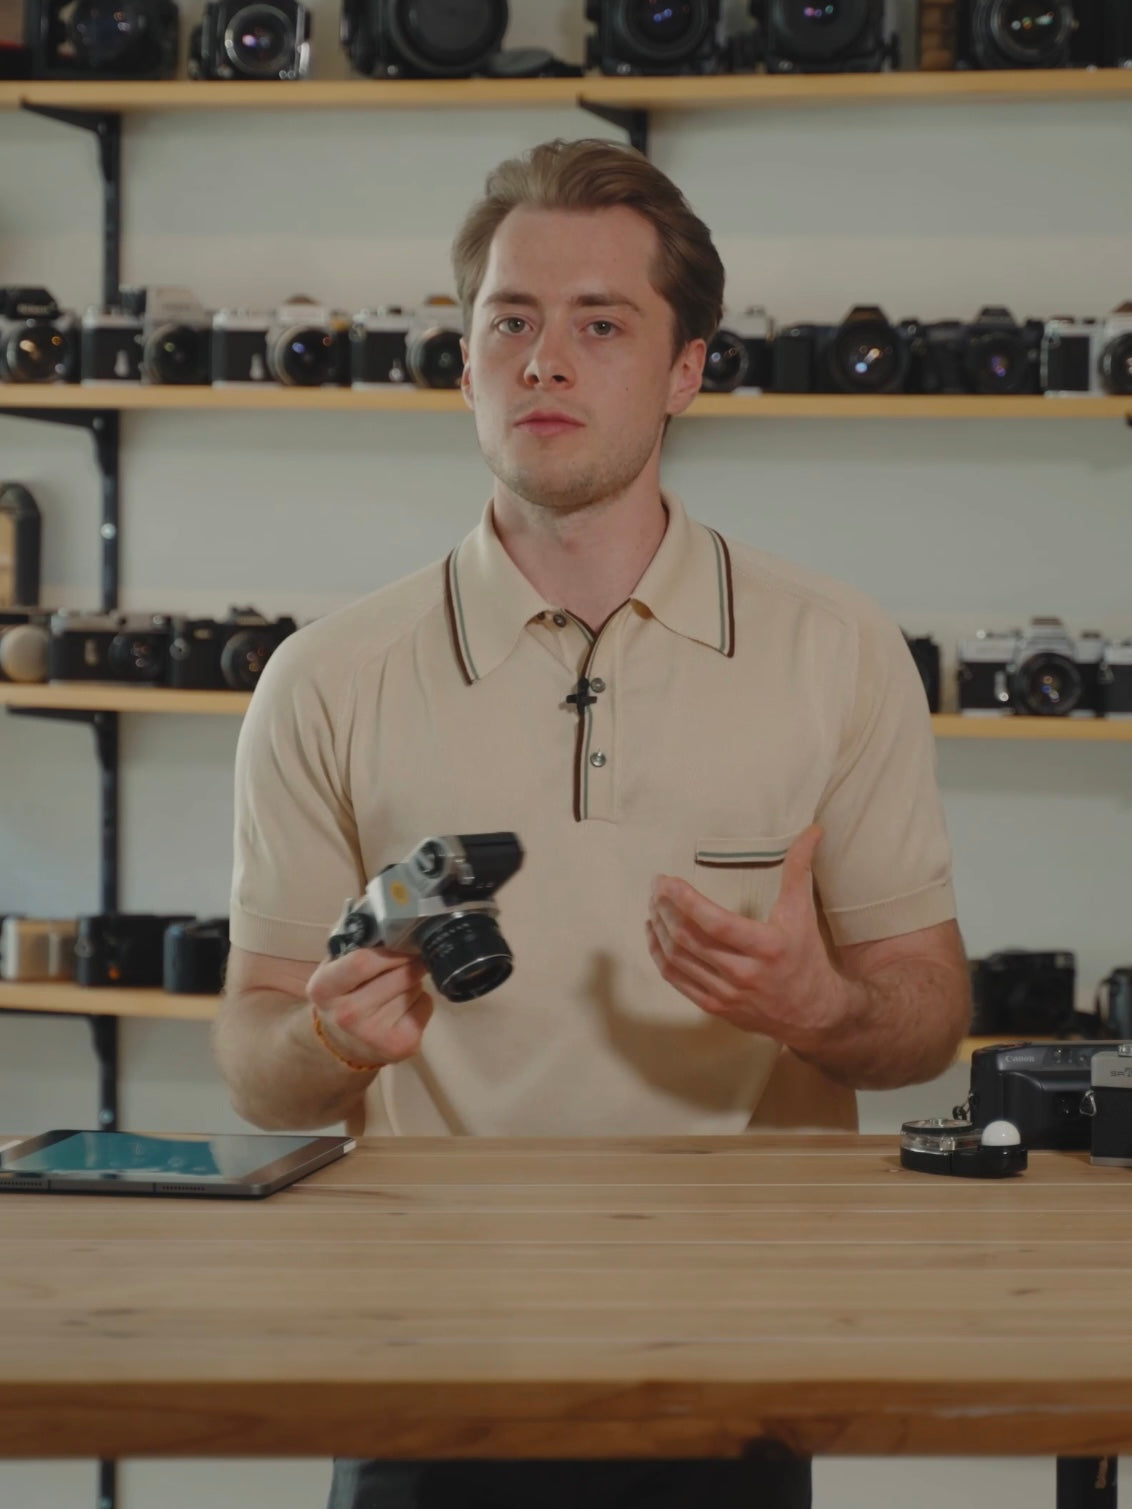 Le posemètre intégré à votre appareil photo